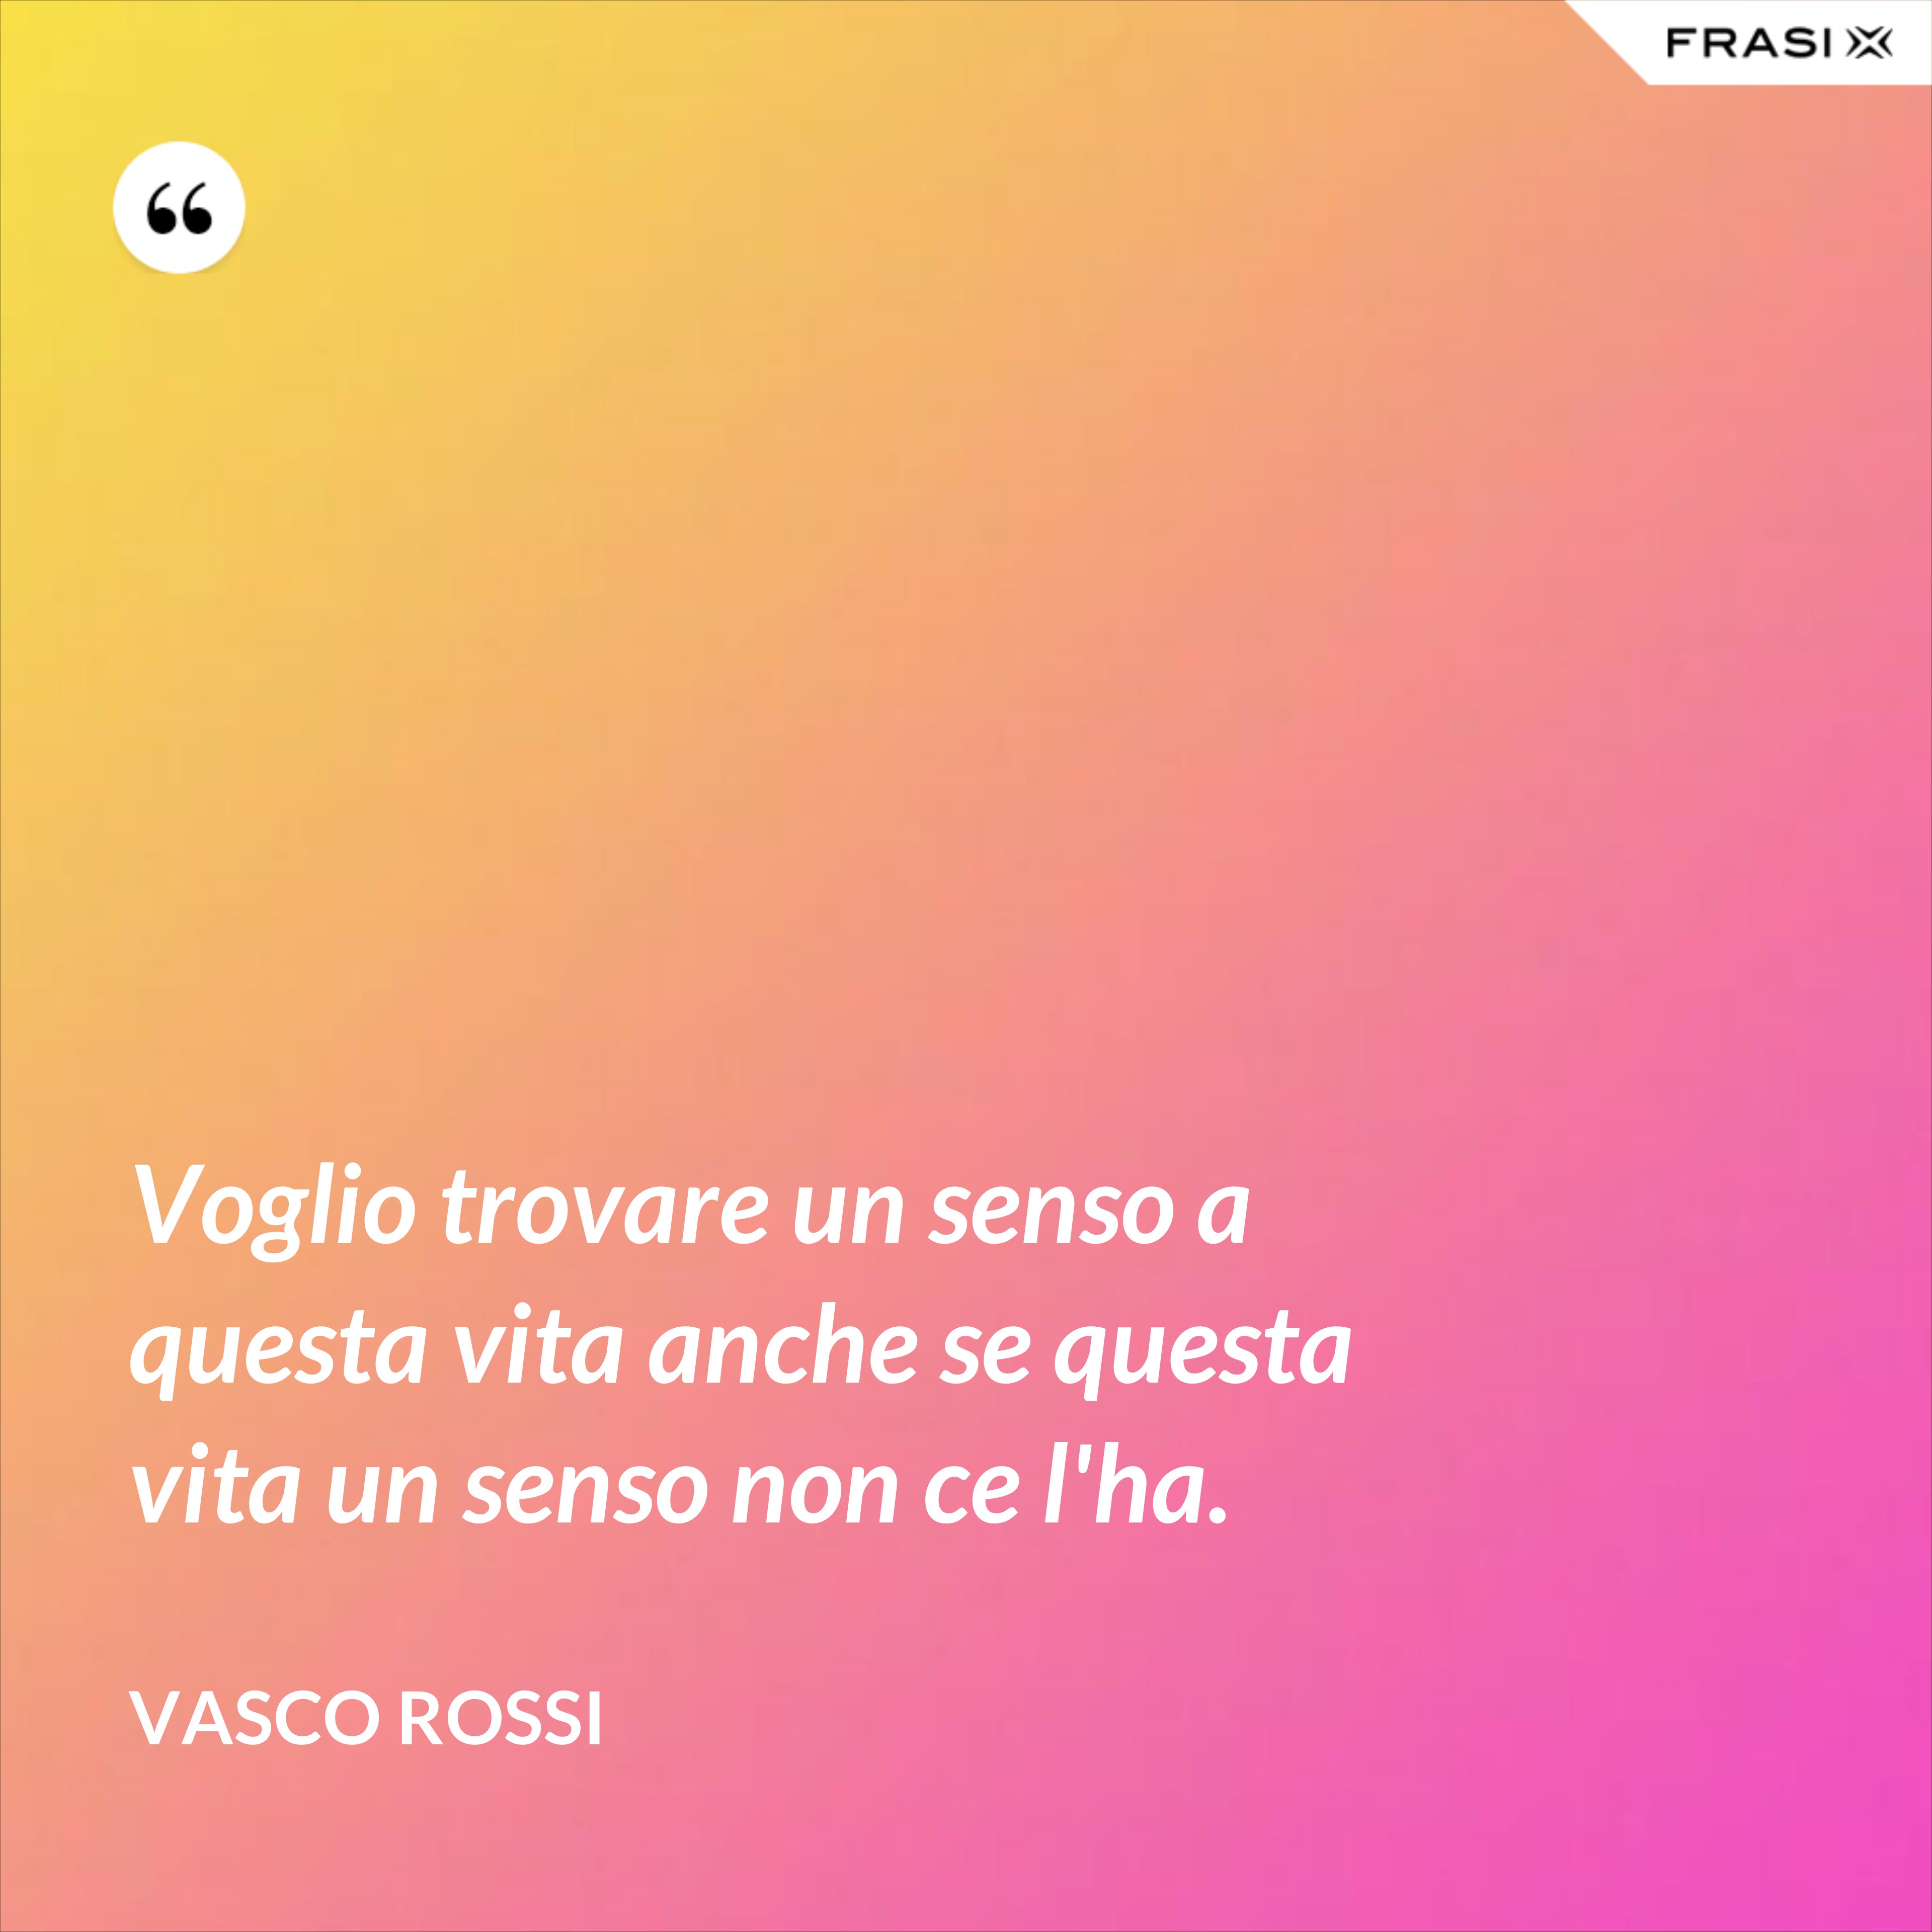 Voglio trovare un senso a questa vita anche se questa vita un senso non ce l'ha. - Vasco Rossi